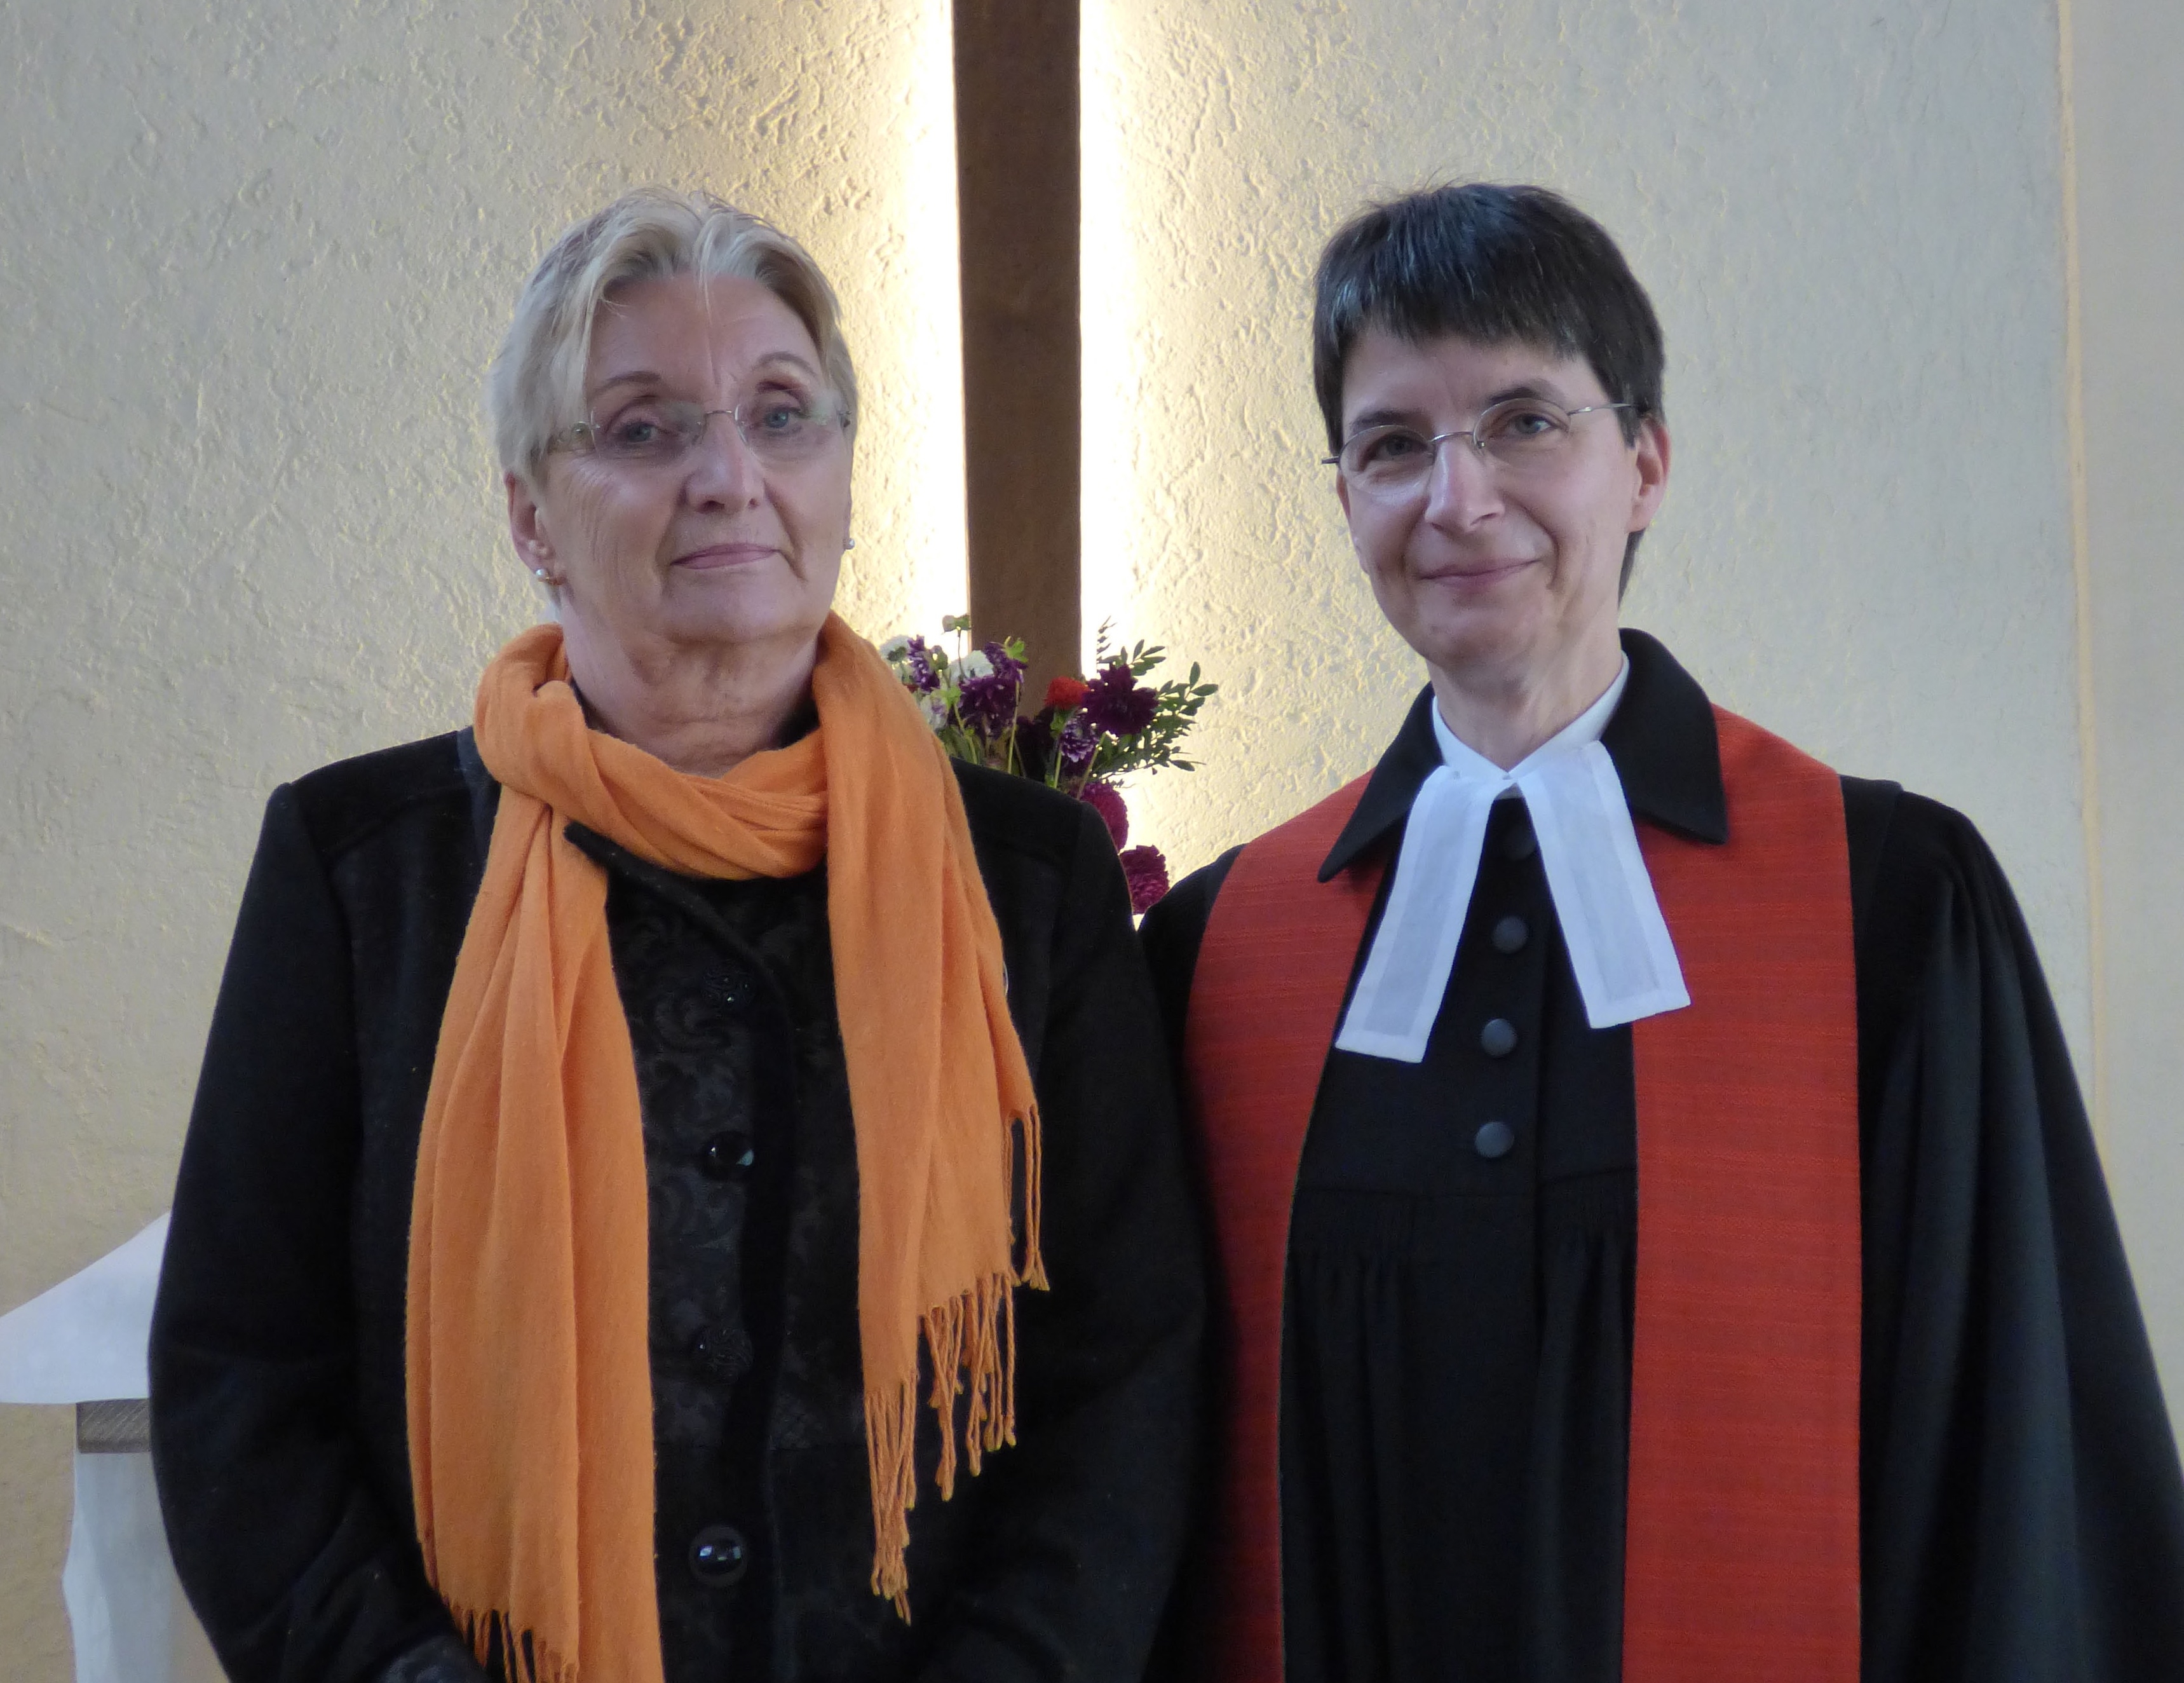 Einführung von Ingrid-Eiden Kühne in ihr Amt als Kirchenälteste